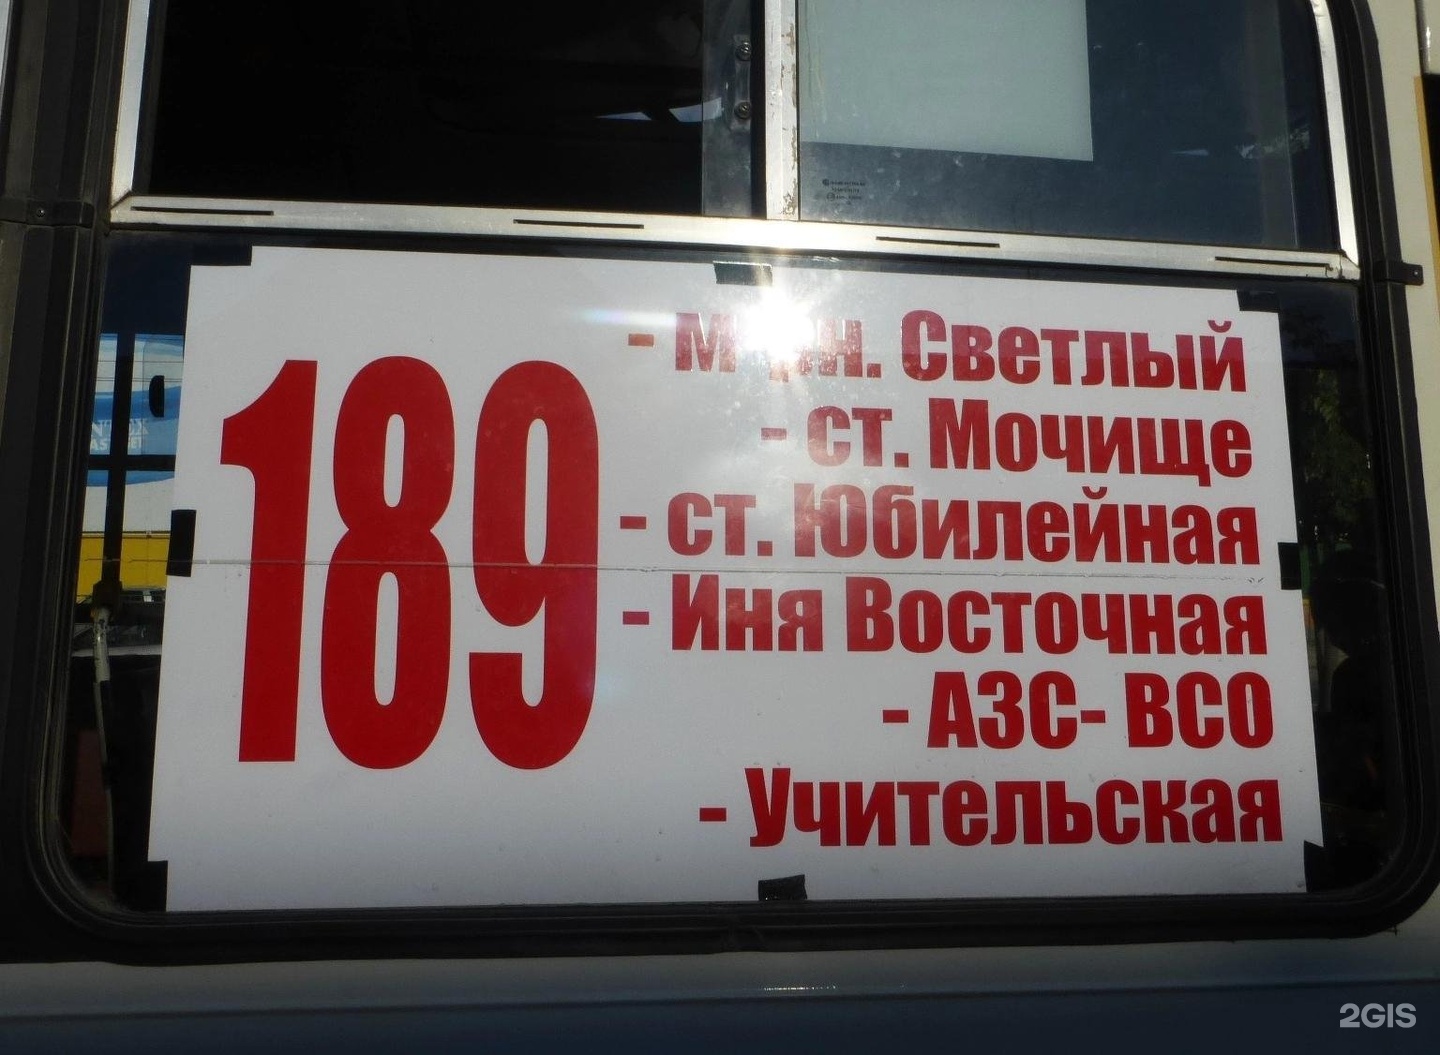 189 Автобус Новосибирск маршрут. Автобус 189. 189 автобус новосибирск расписание